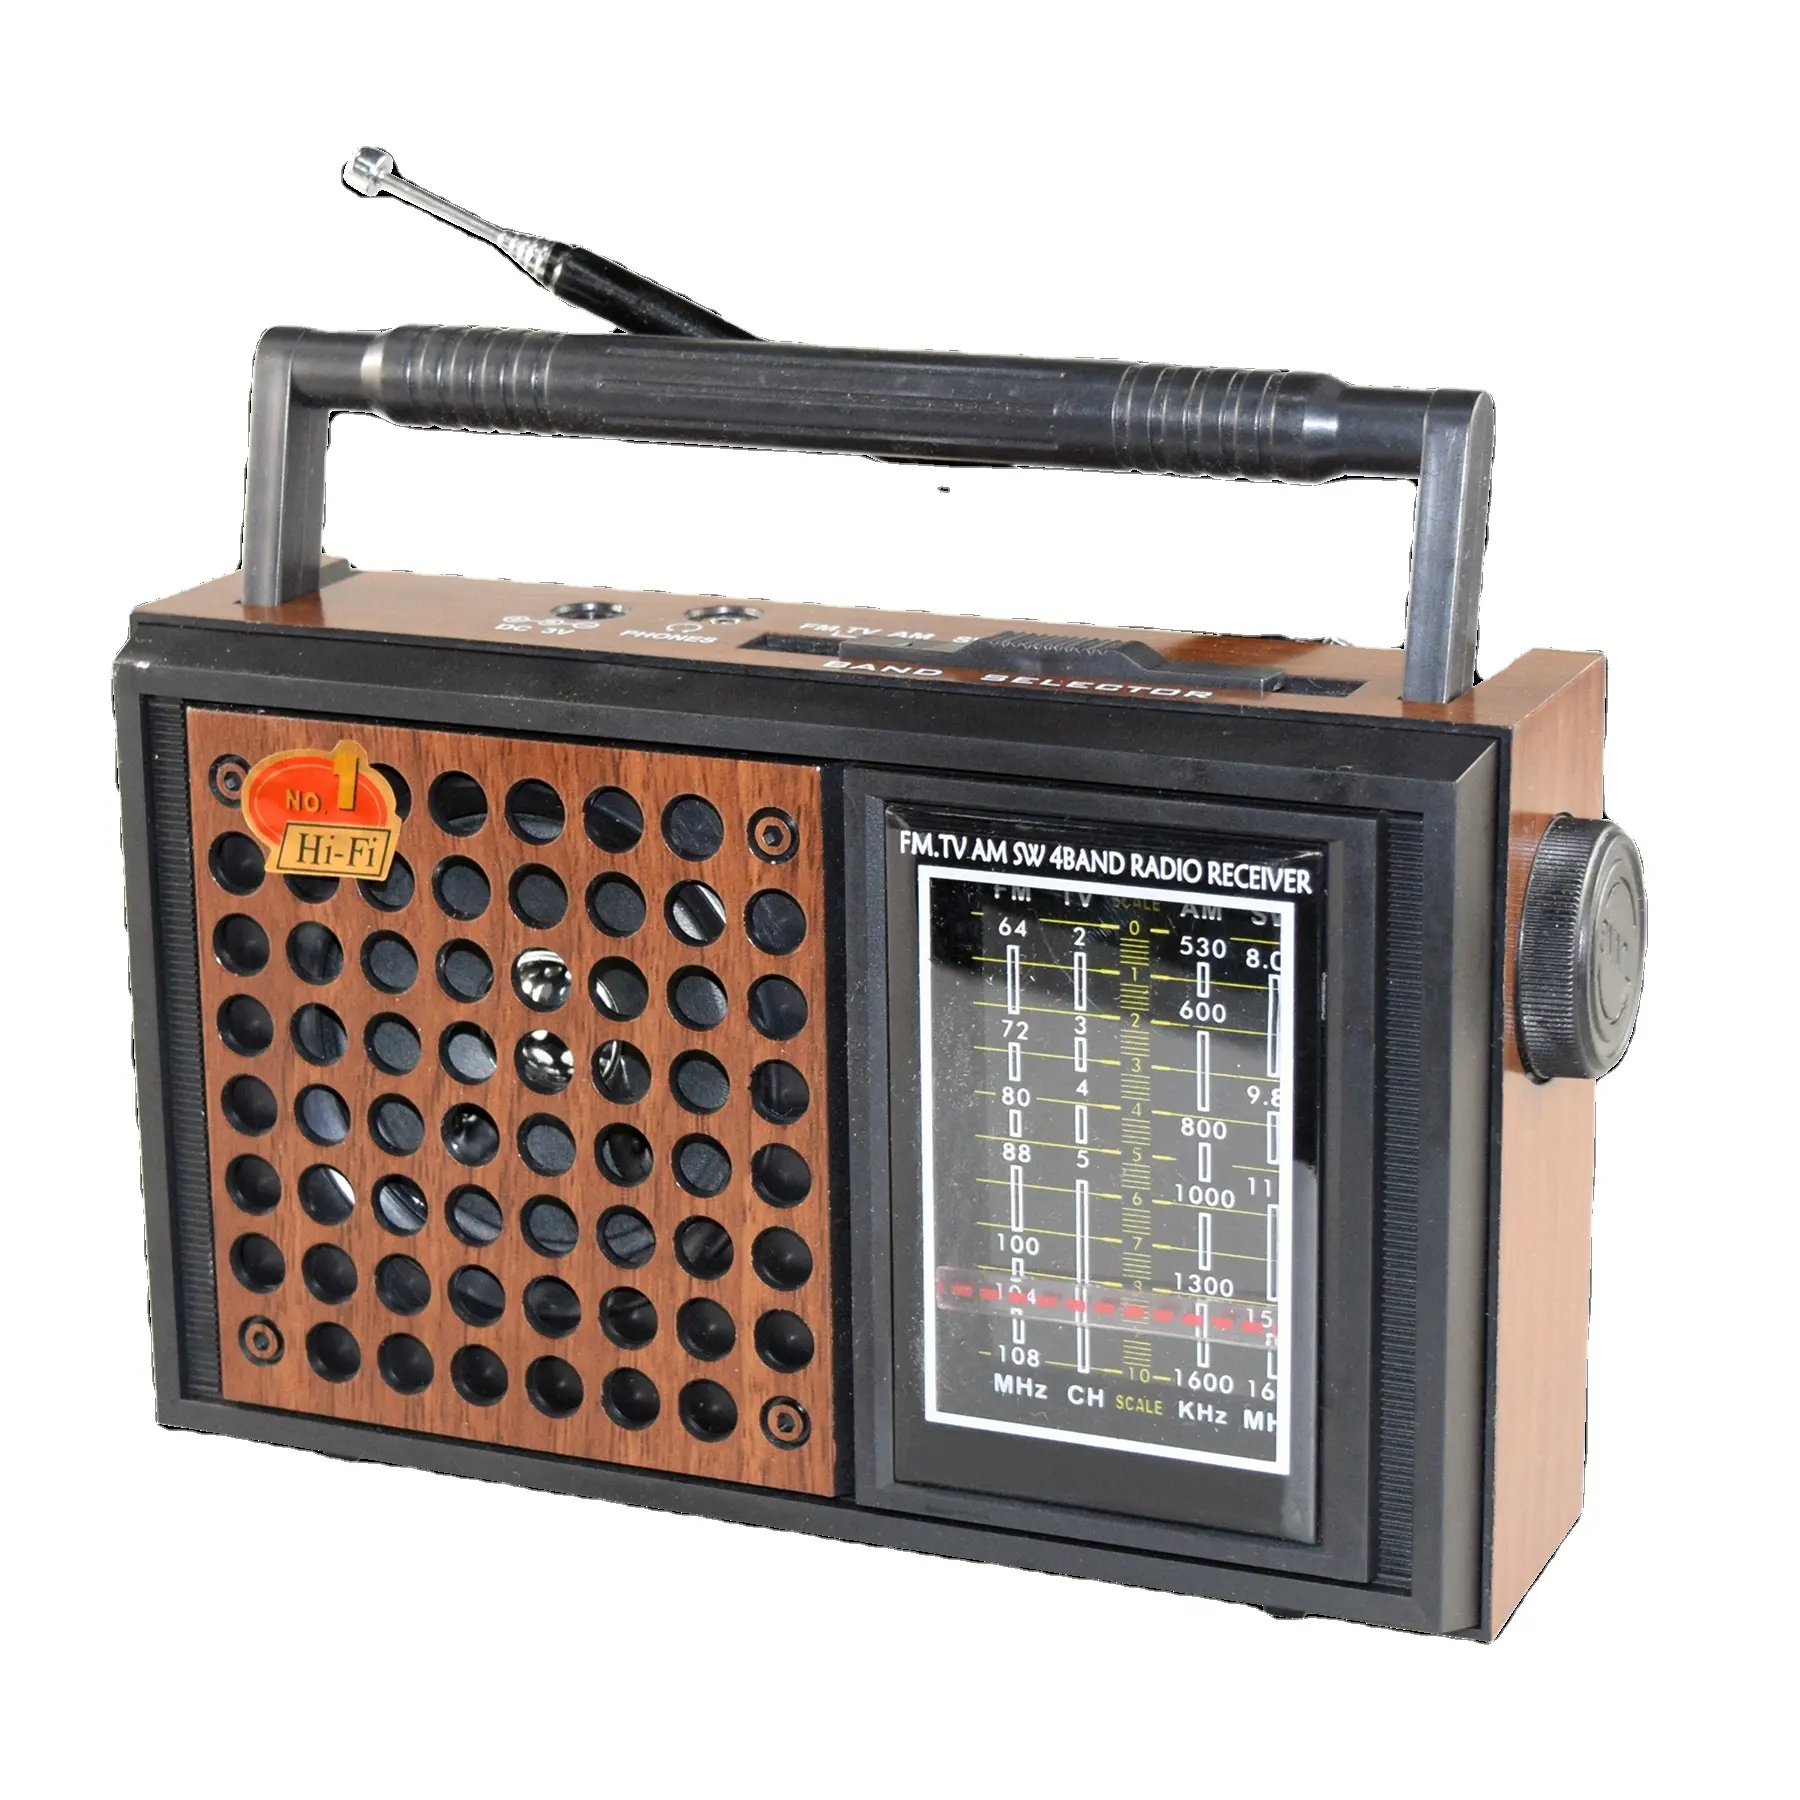 Penjualan langsung pabrik OEM Radio Retro model Klasik FM AM SW penerima Radio rumah portabel